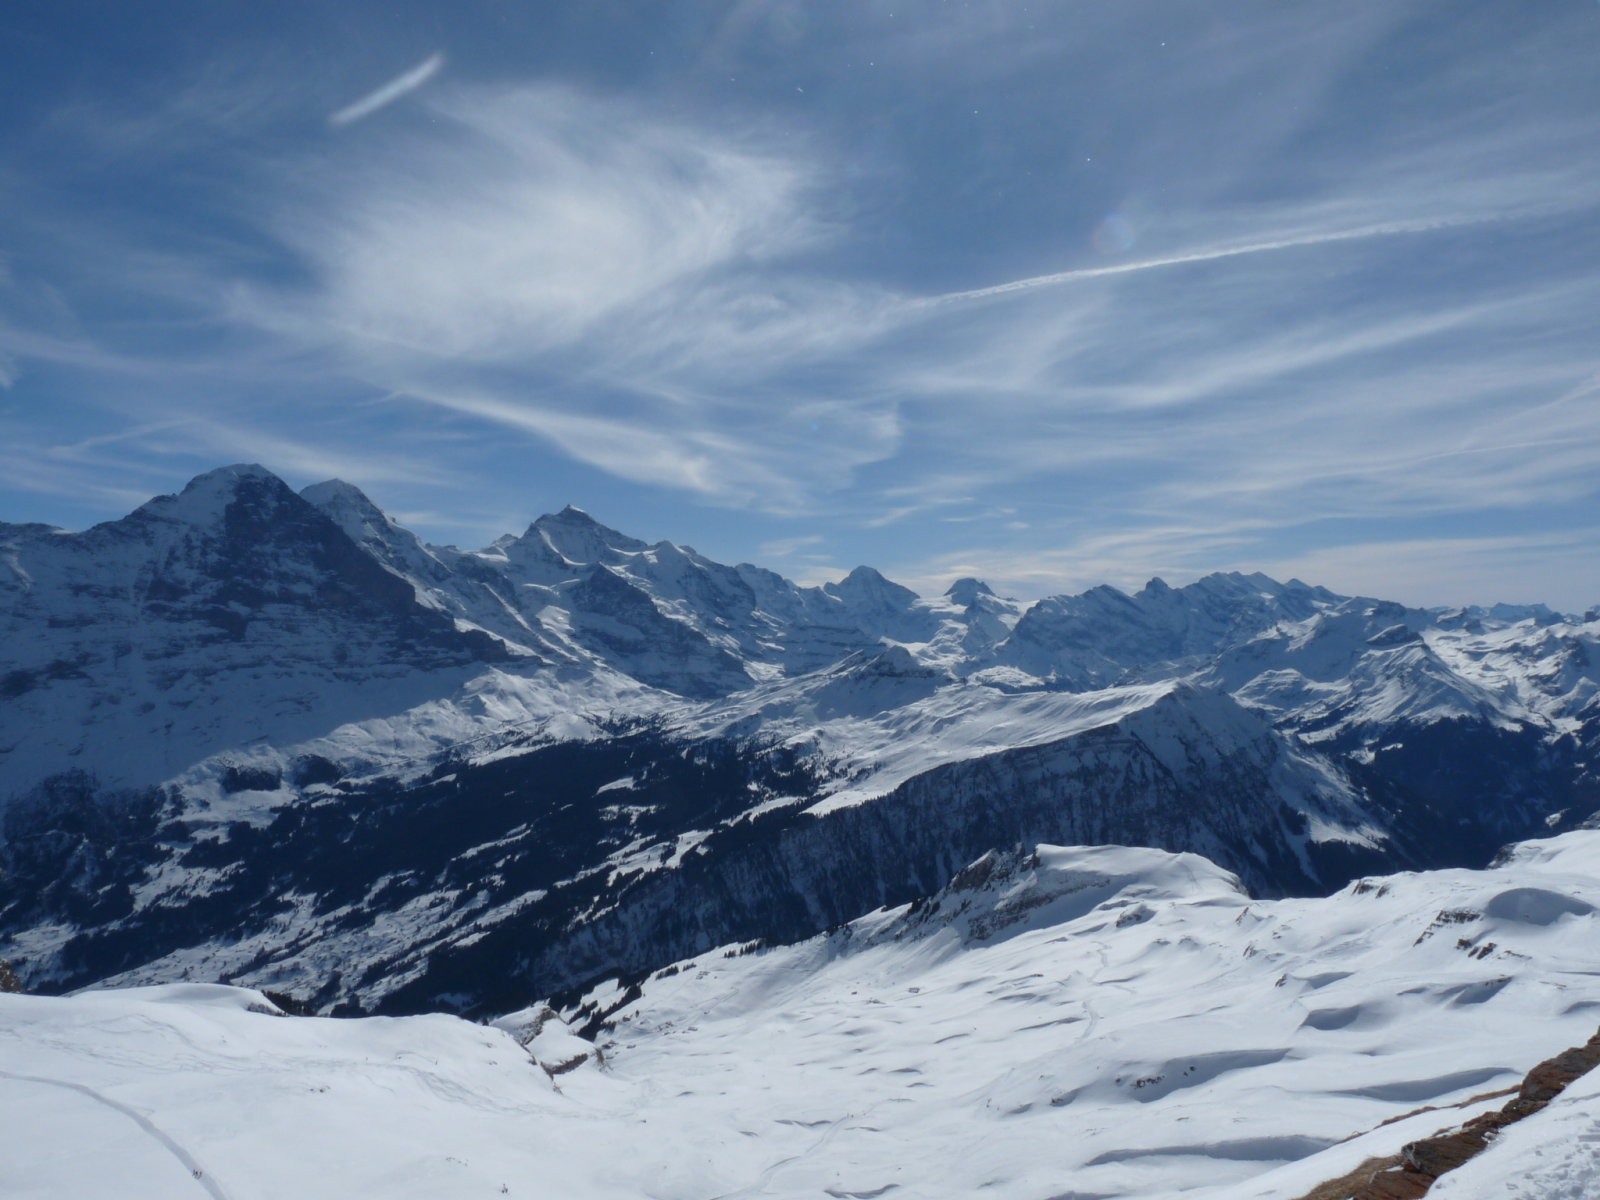 Mönch, Eiger, Jungfrau